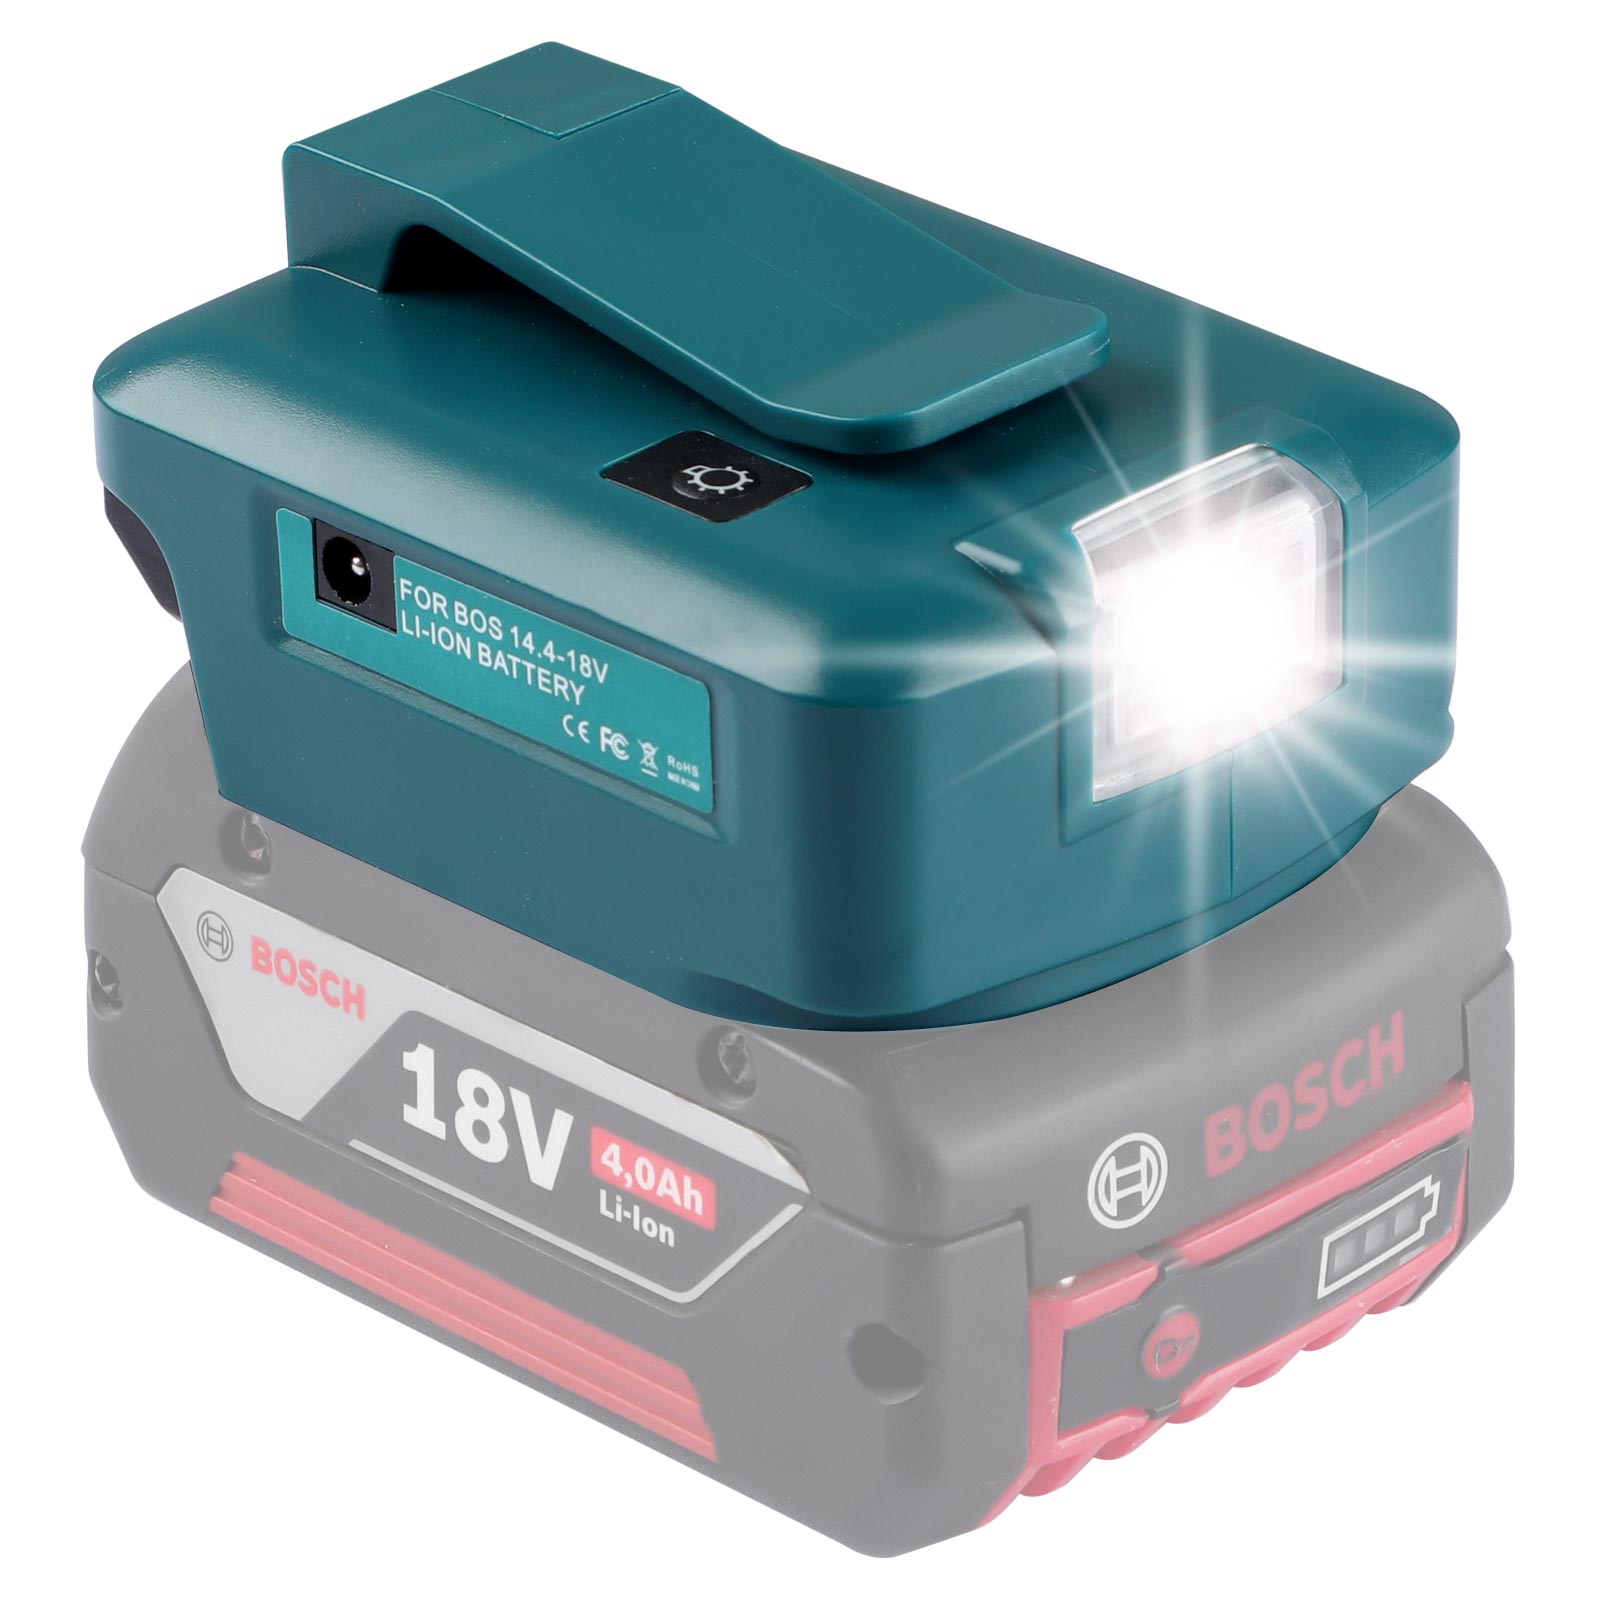 Urun батарея адаптері Bosch 14,4-18 В литий батареясының қуат көзі үшін тұрақты ток және 2 USB порты бар жарық диодты шамы